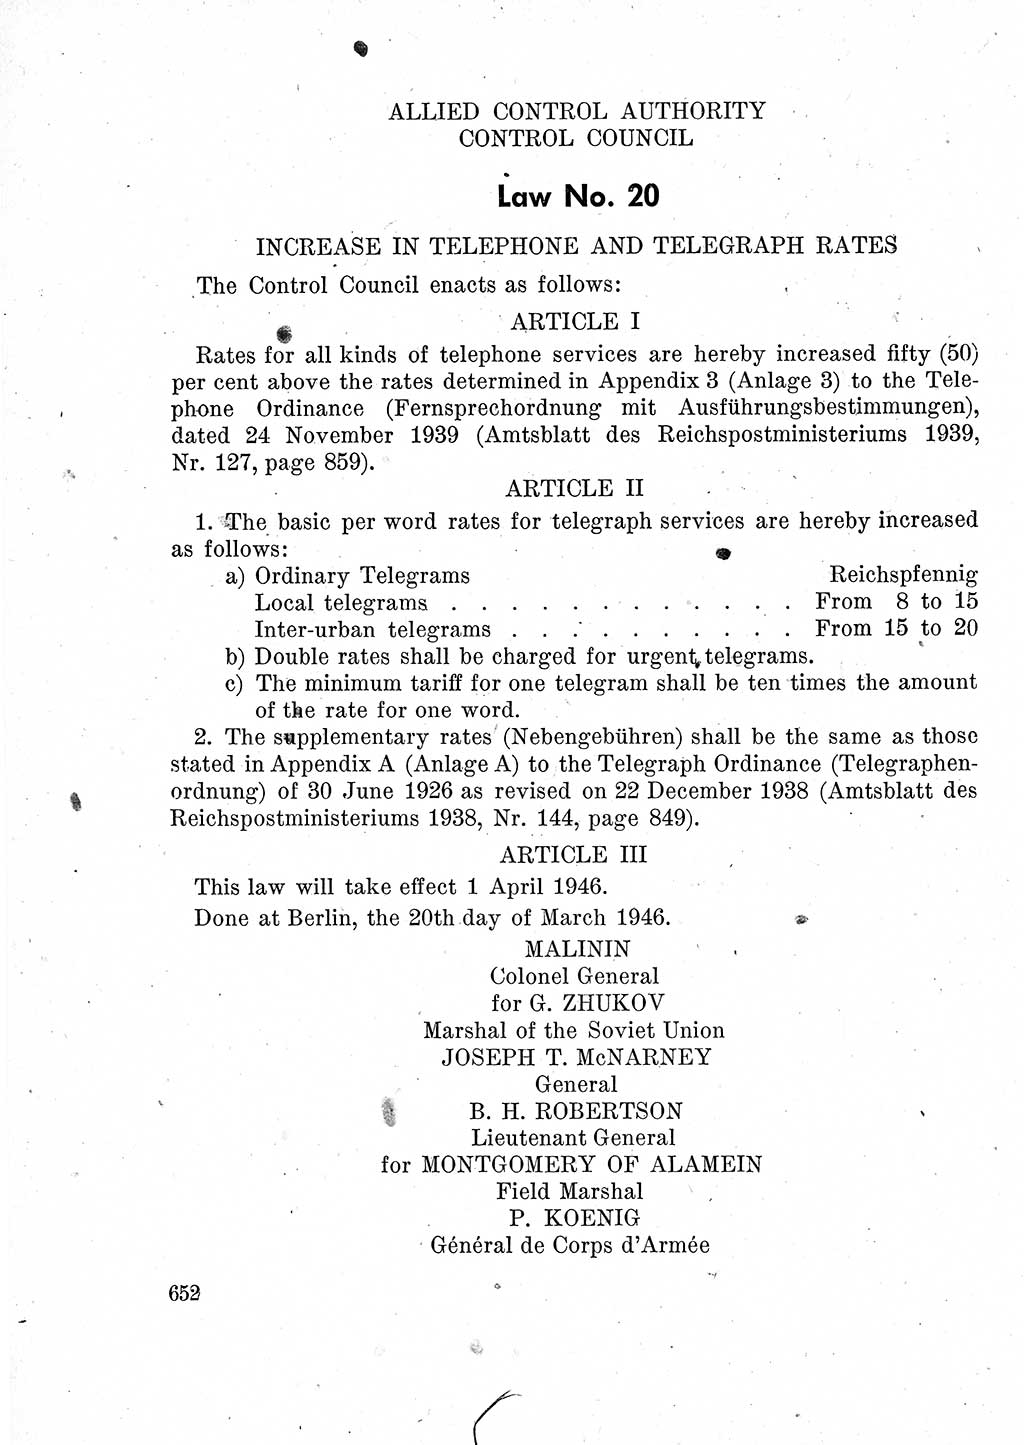 Das Recht der Besatzungsmacht (Deutschland), Proklamationen, Deklerationen, Verordnungen, Gesetze und Bekanntmachungen 1947, Seite 652 (R. Bes. Dtl. 1947, S. 652)